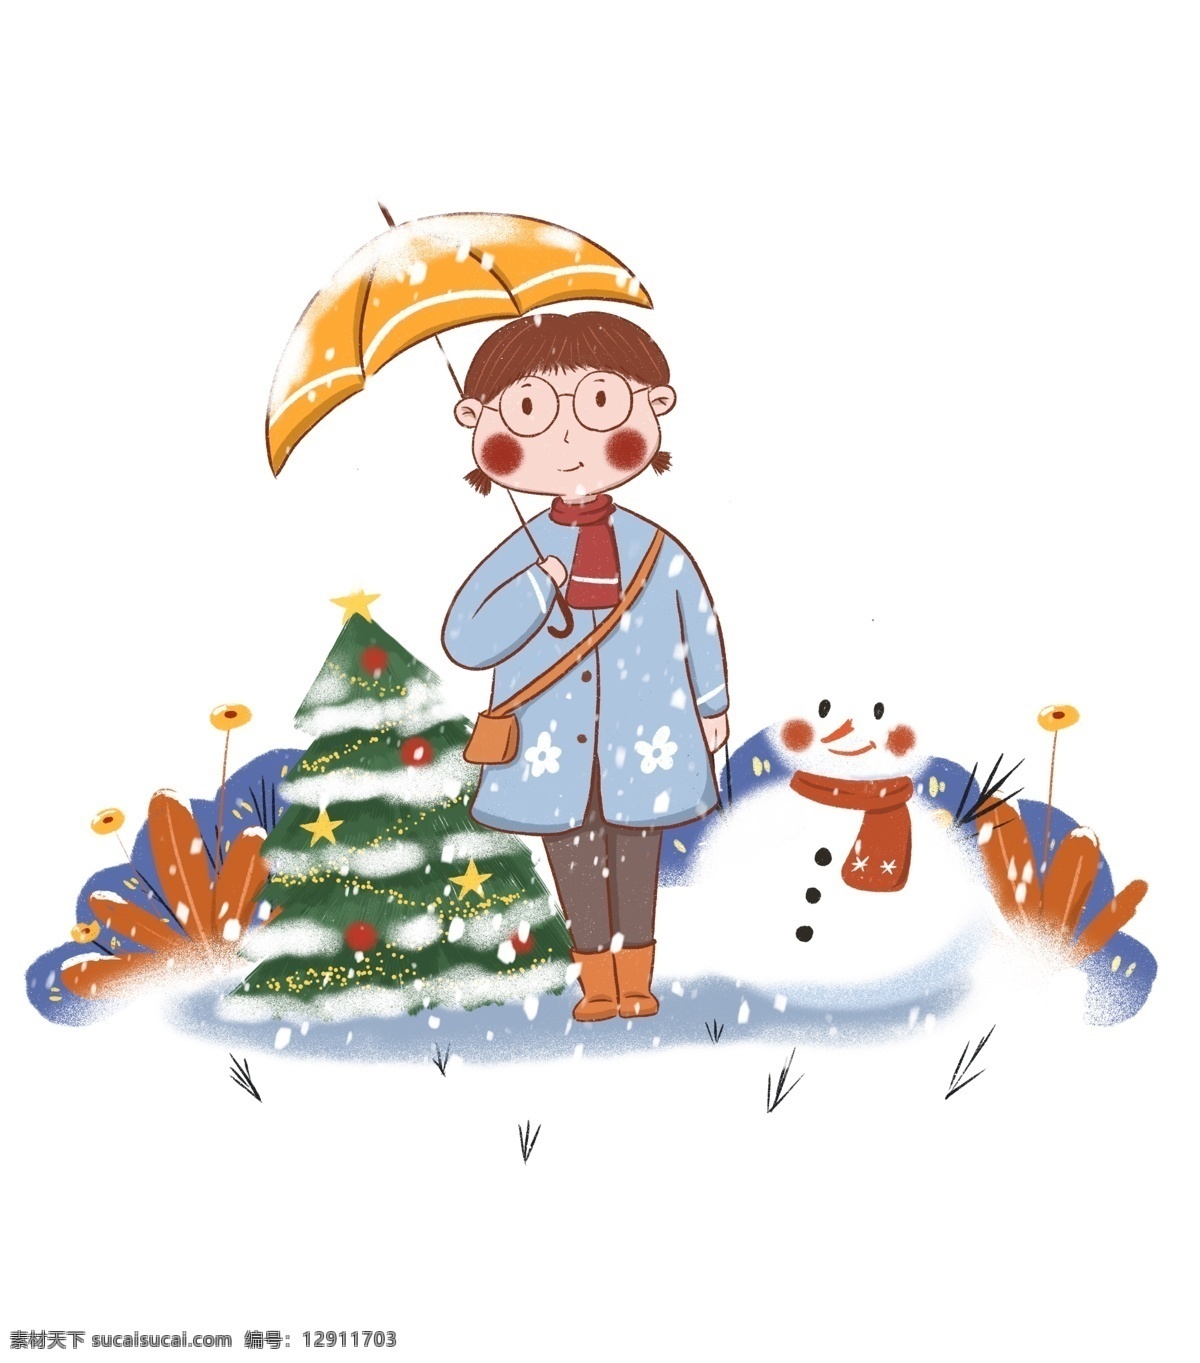 手绘 小 清新 冬季 雪 中 打伞 女生 雪景 圣诞节 圣诞树 下雪 大雪 小雪 雪人 植物 绿植 五角星 小黄伞 打伞的人 手绘人物